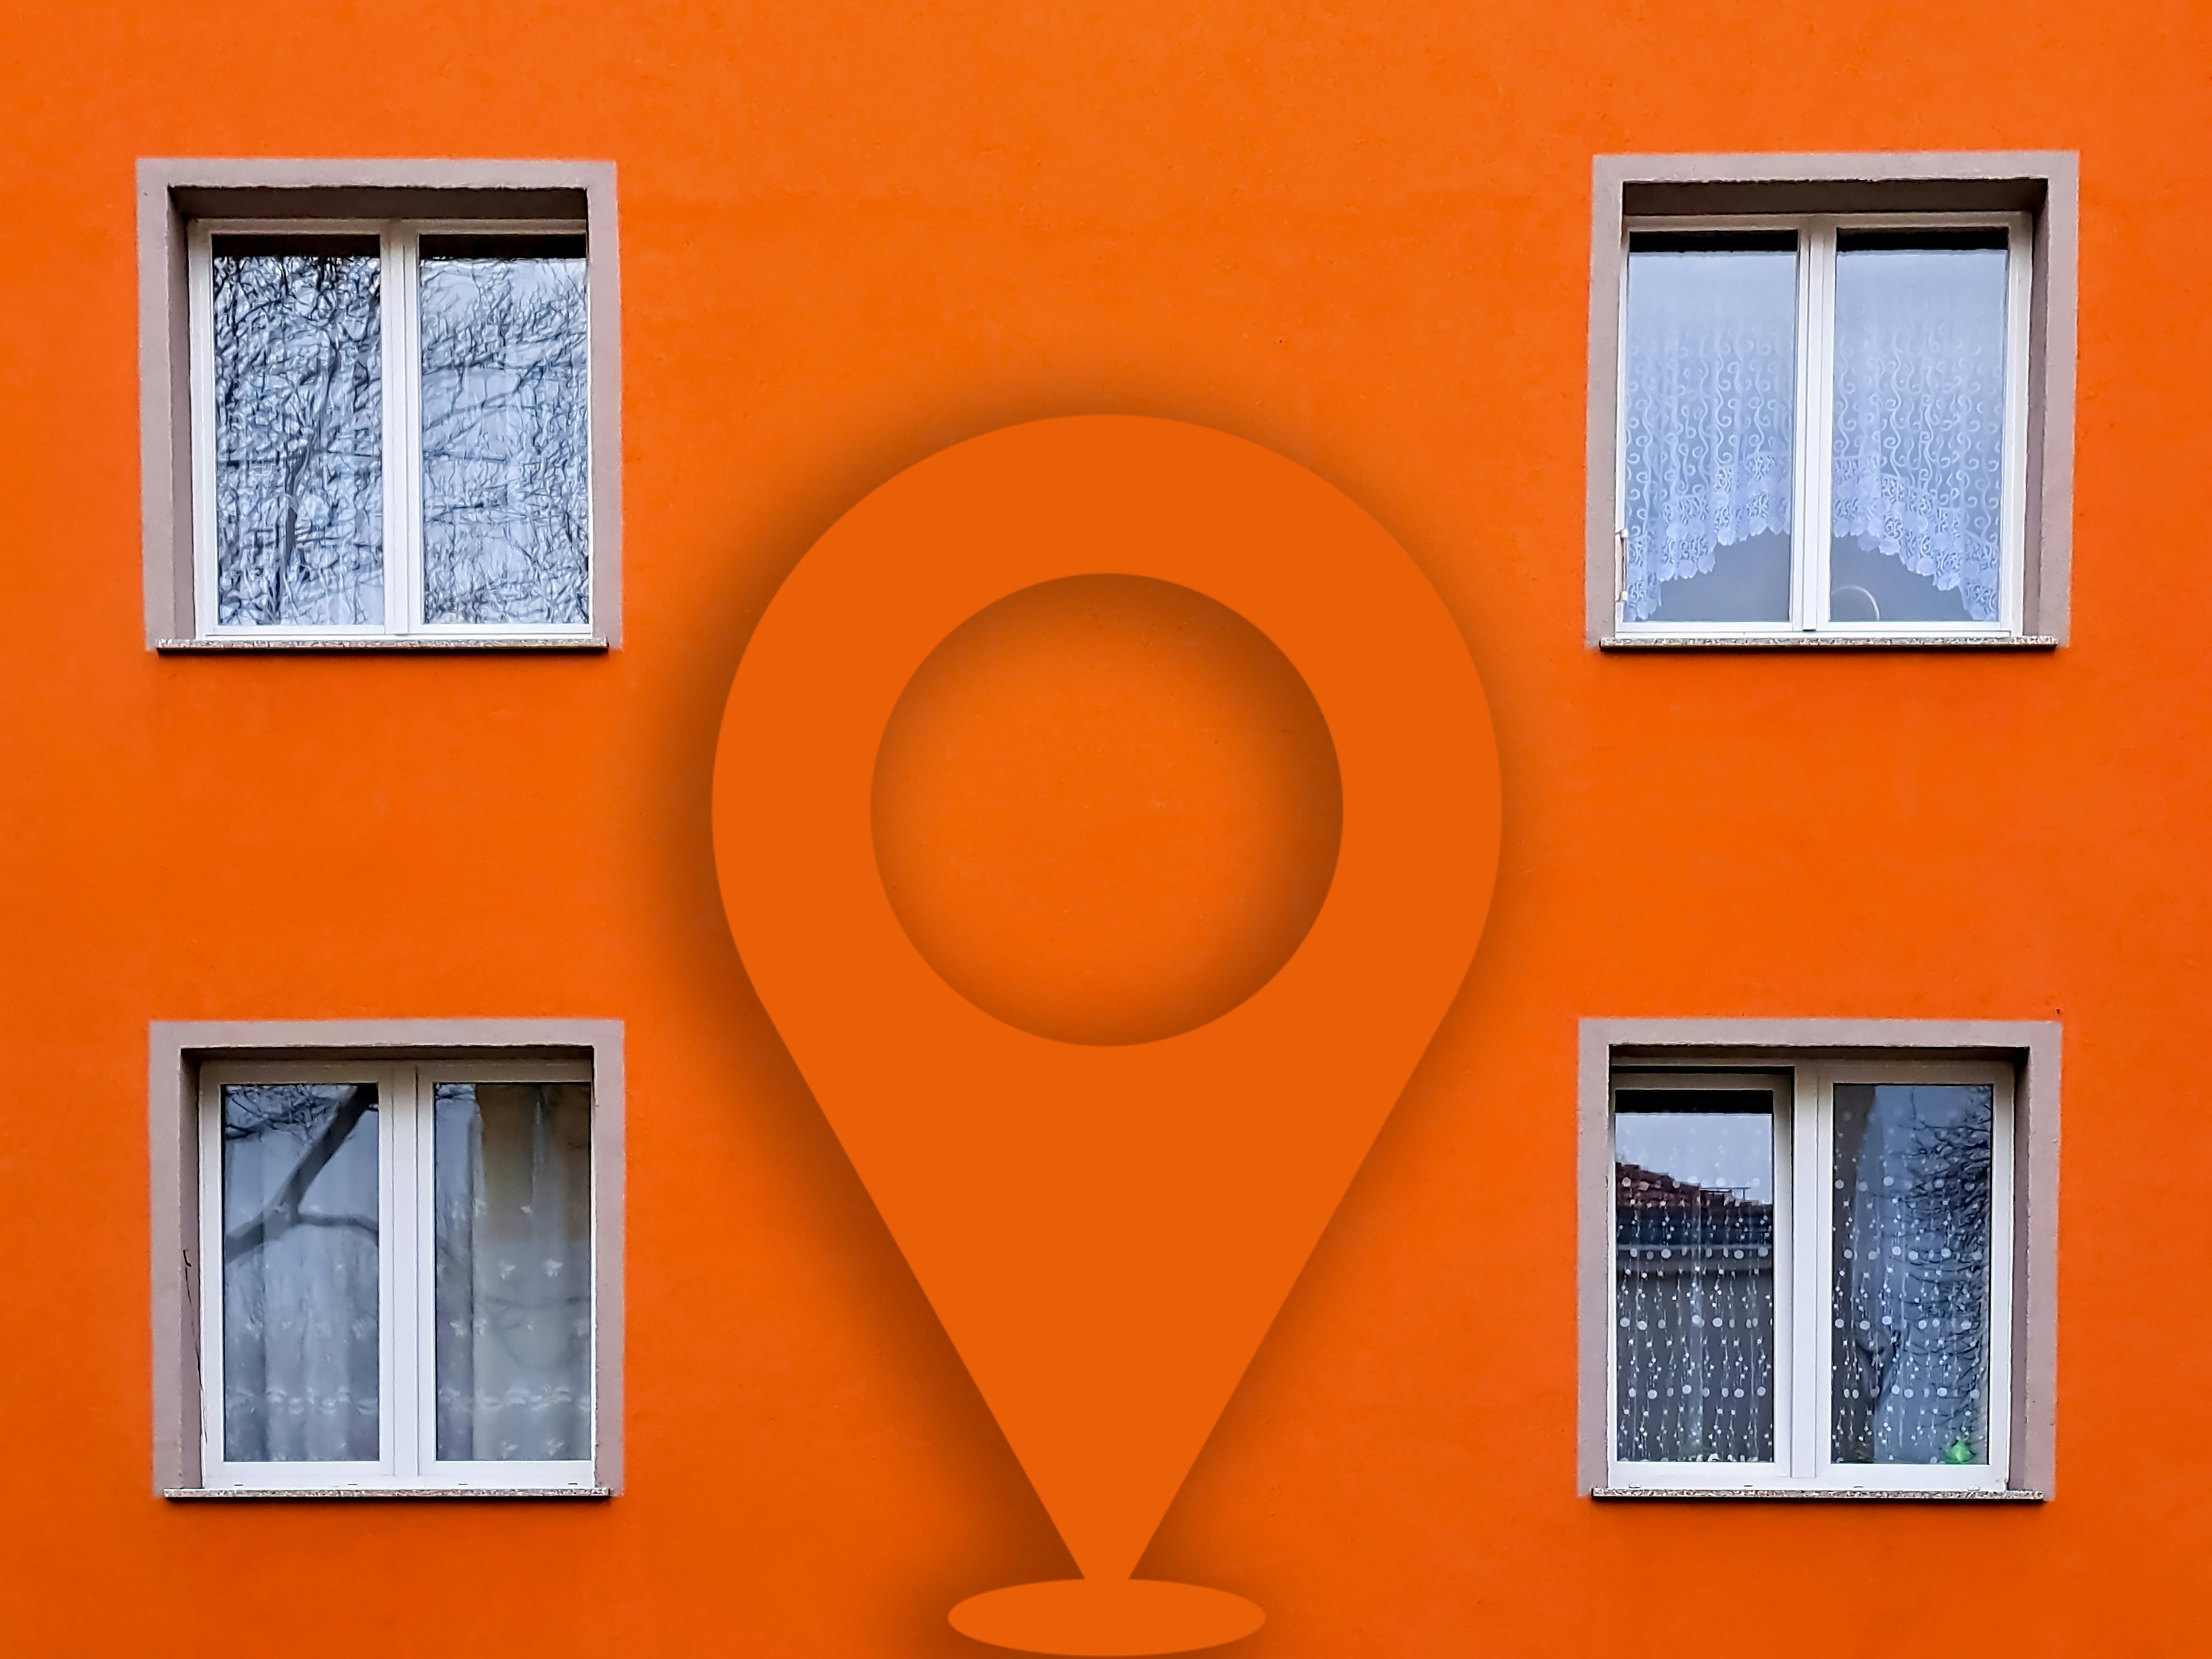 Bilde av en boligblokk. Bilde tatt tett på. Viser fire vinduer over to etasjer. Oransje farge. I midten av bildet er geotagen kjent fra Nabolaget limt inn.